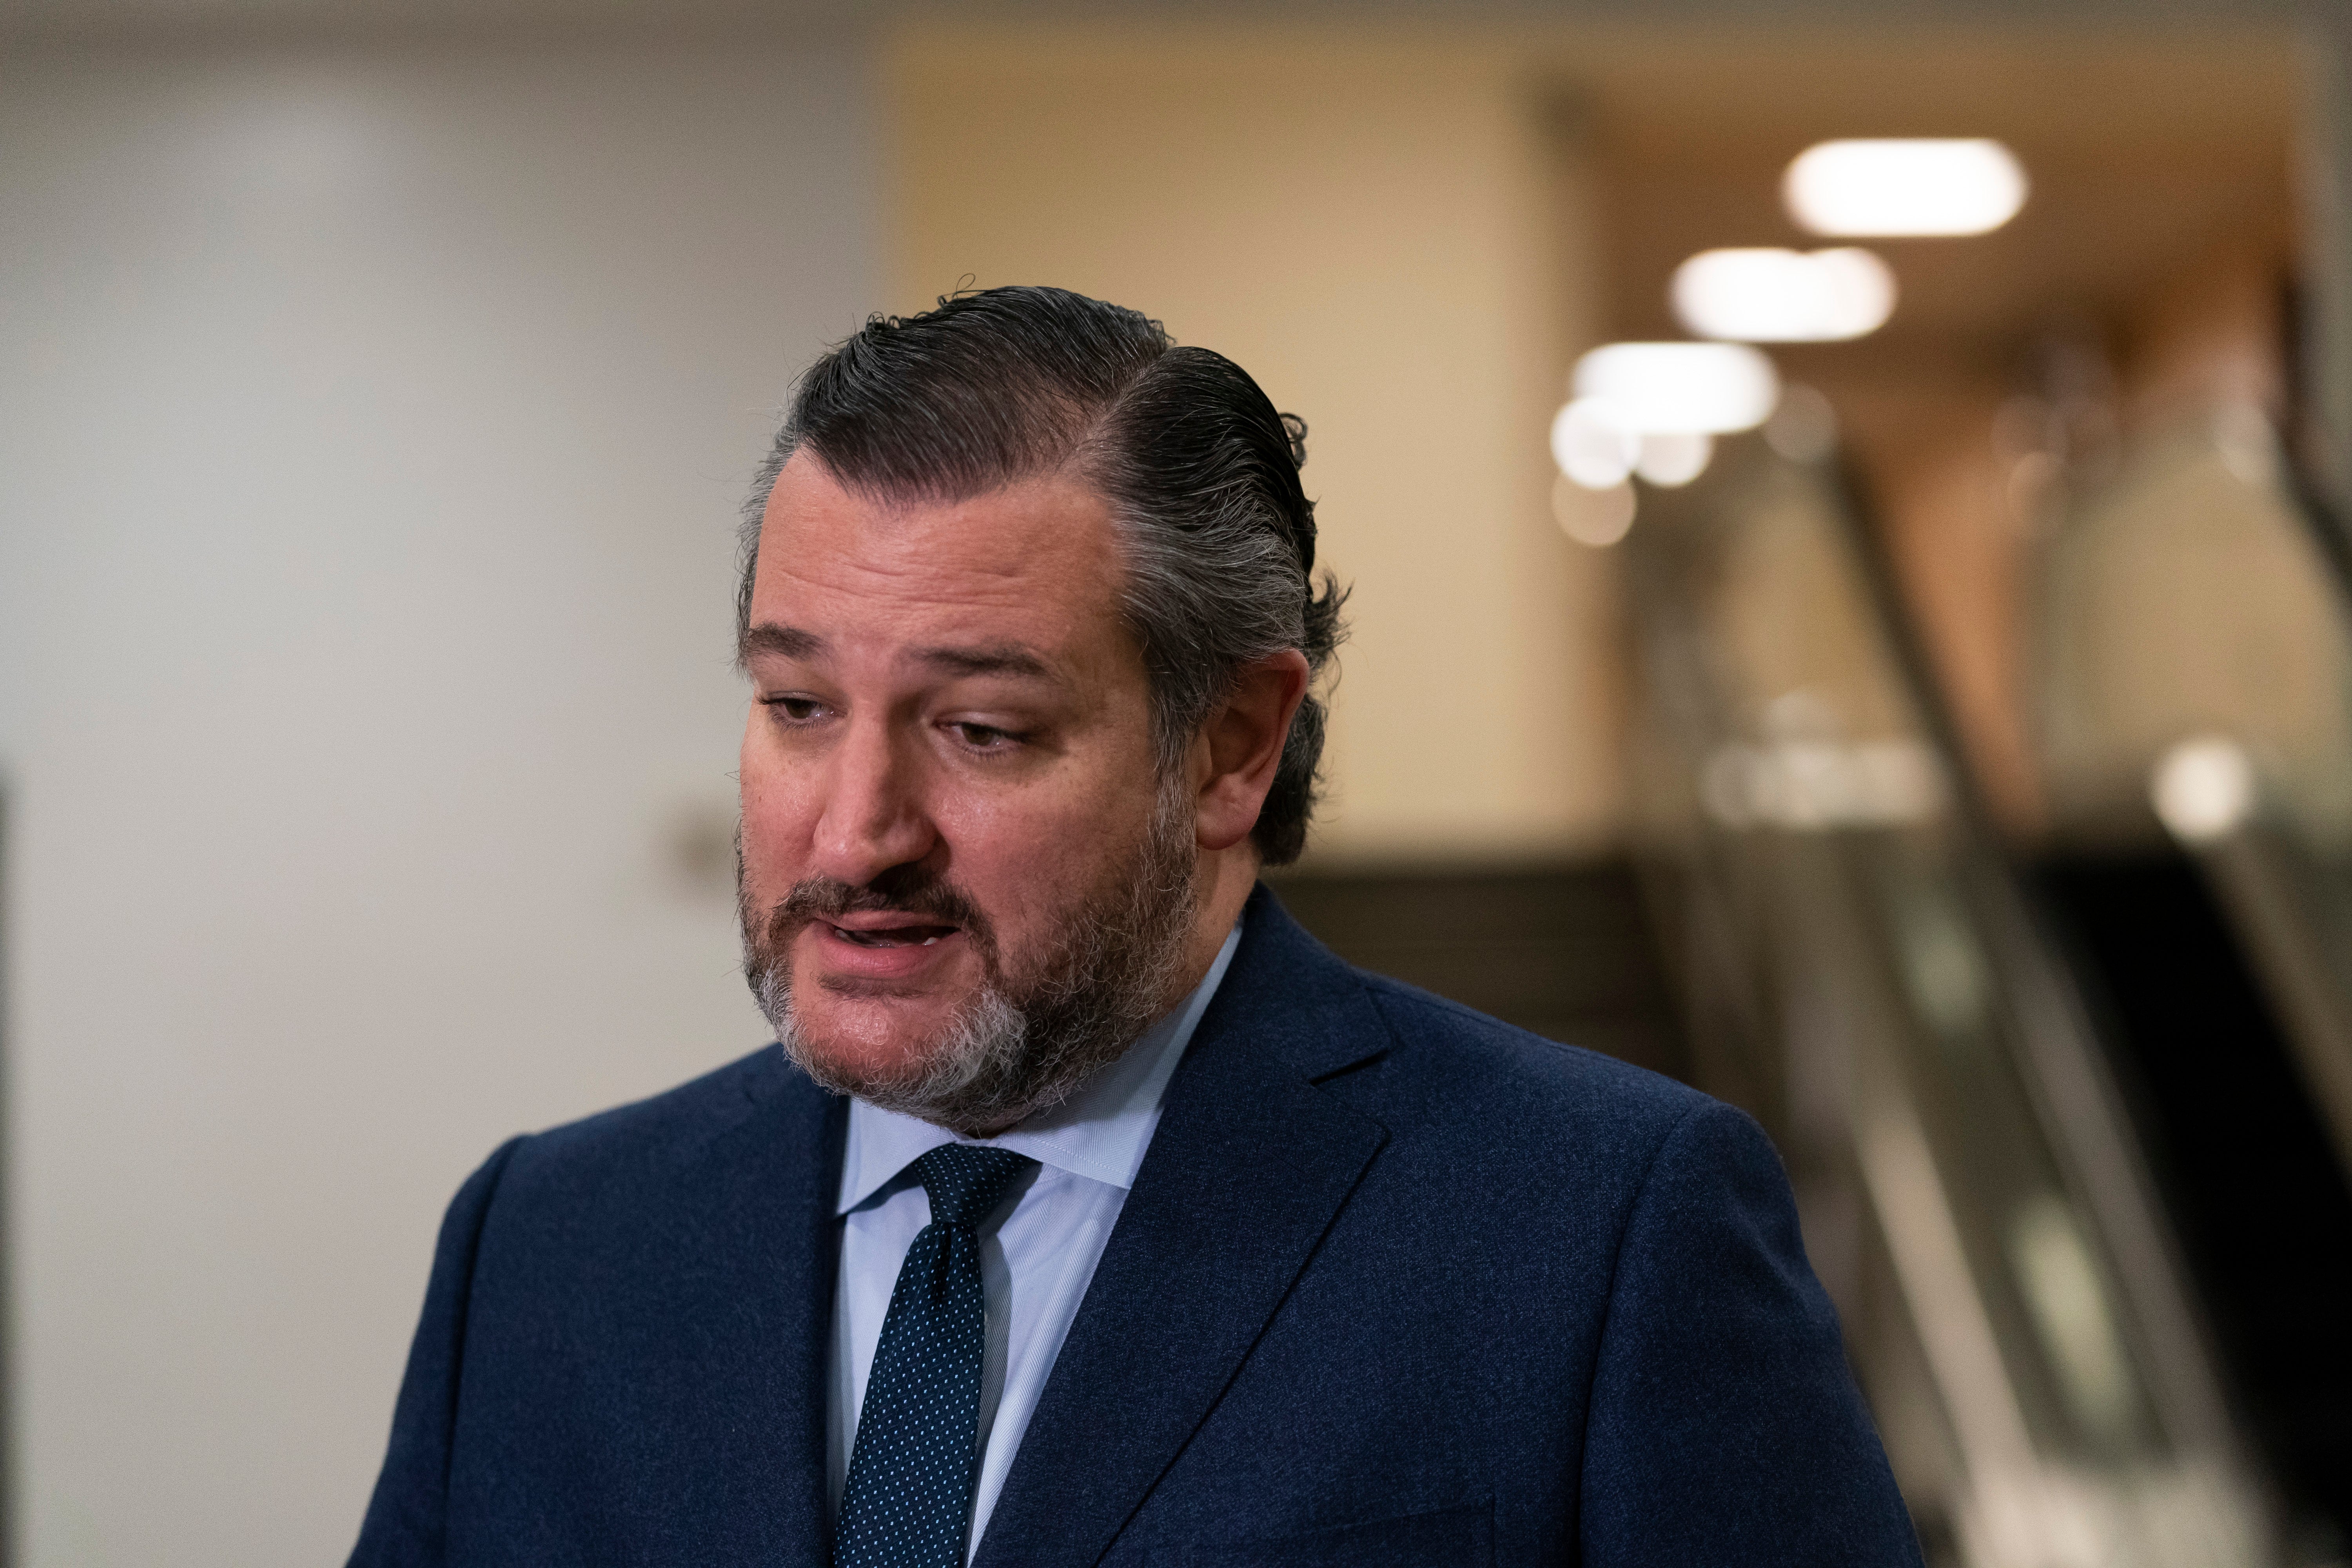 Ted Cruz calls for congressional investigation into Cuomo nursing home scandal